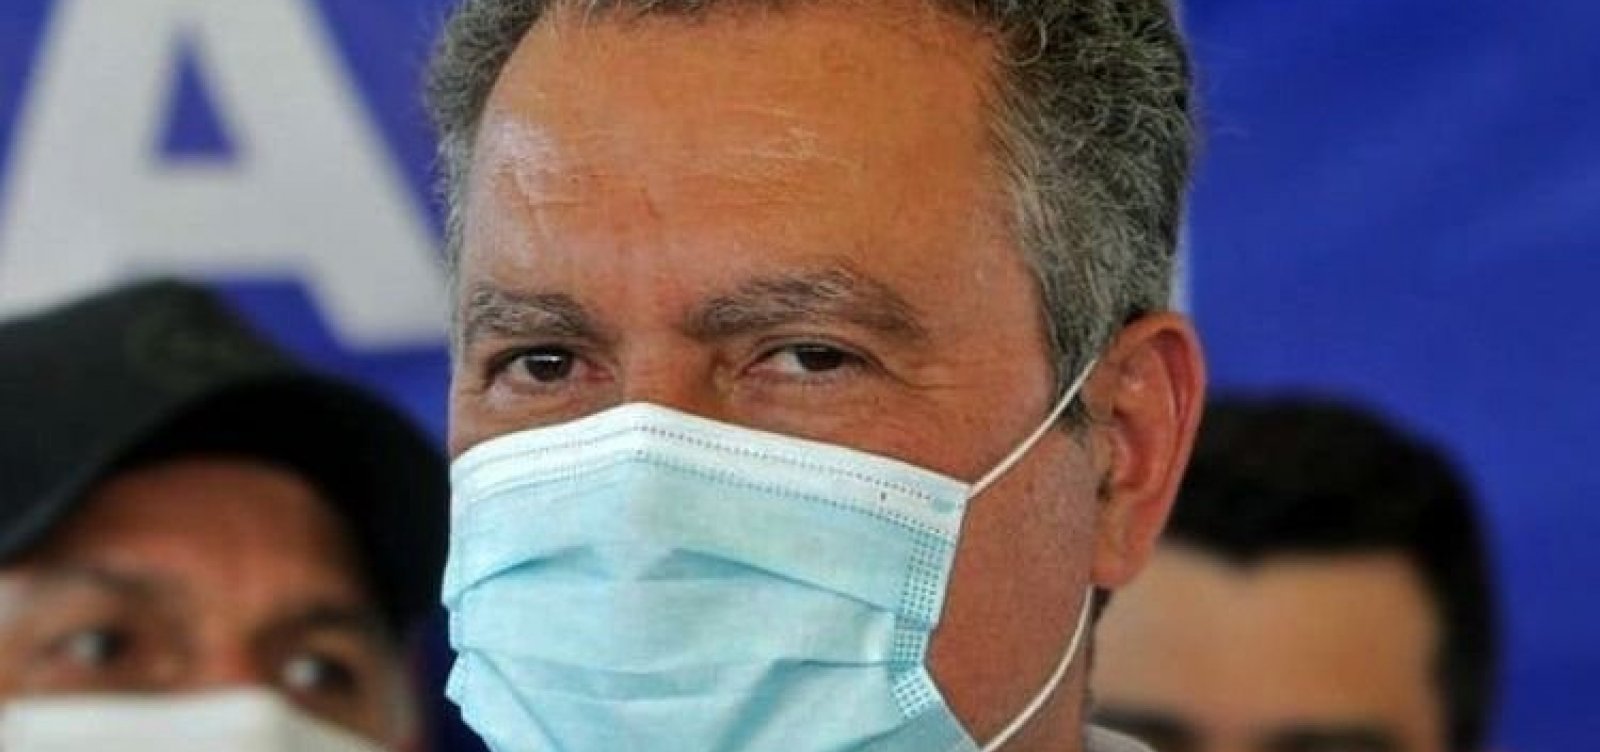 Após fala de Bolsonaro sobre liberação de máscaras na Bahia, Rui rebate que "não devemos nos precipitar"